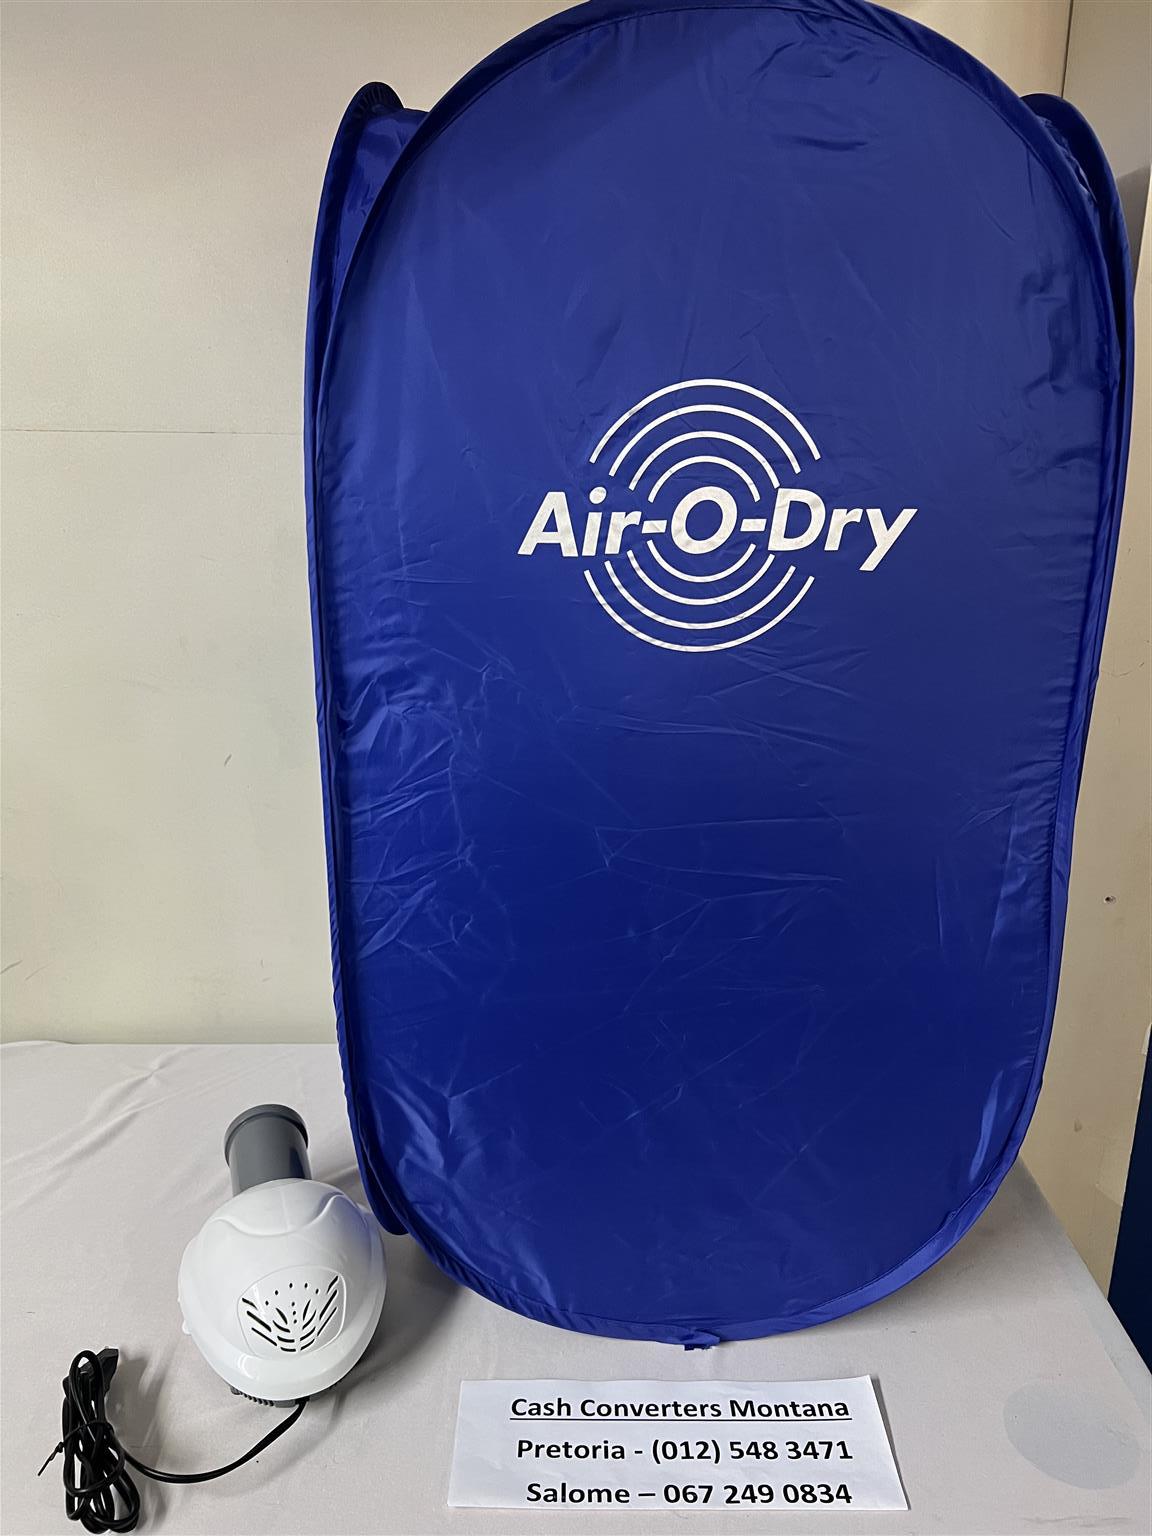 Air-O-Dry - B033068074-3